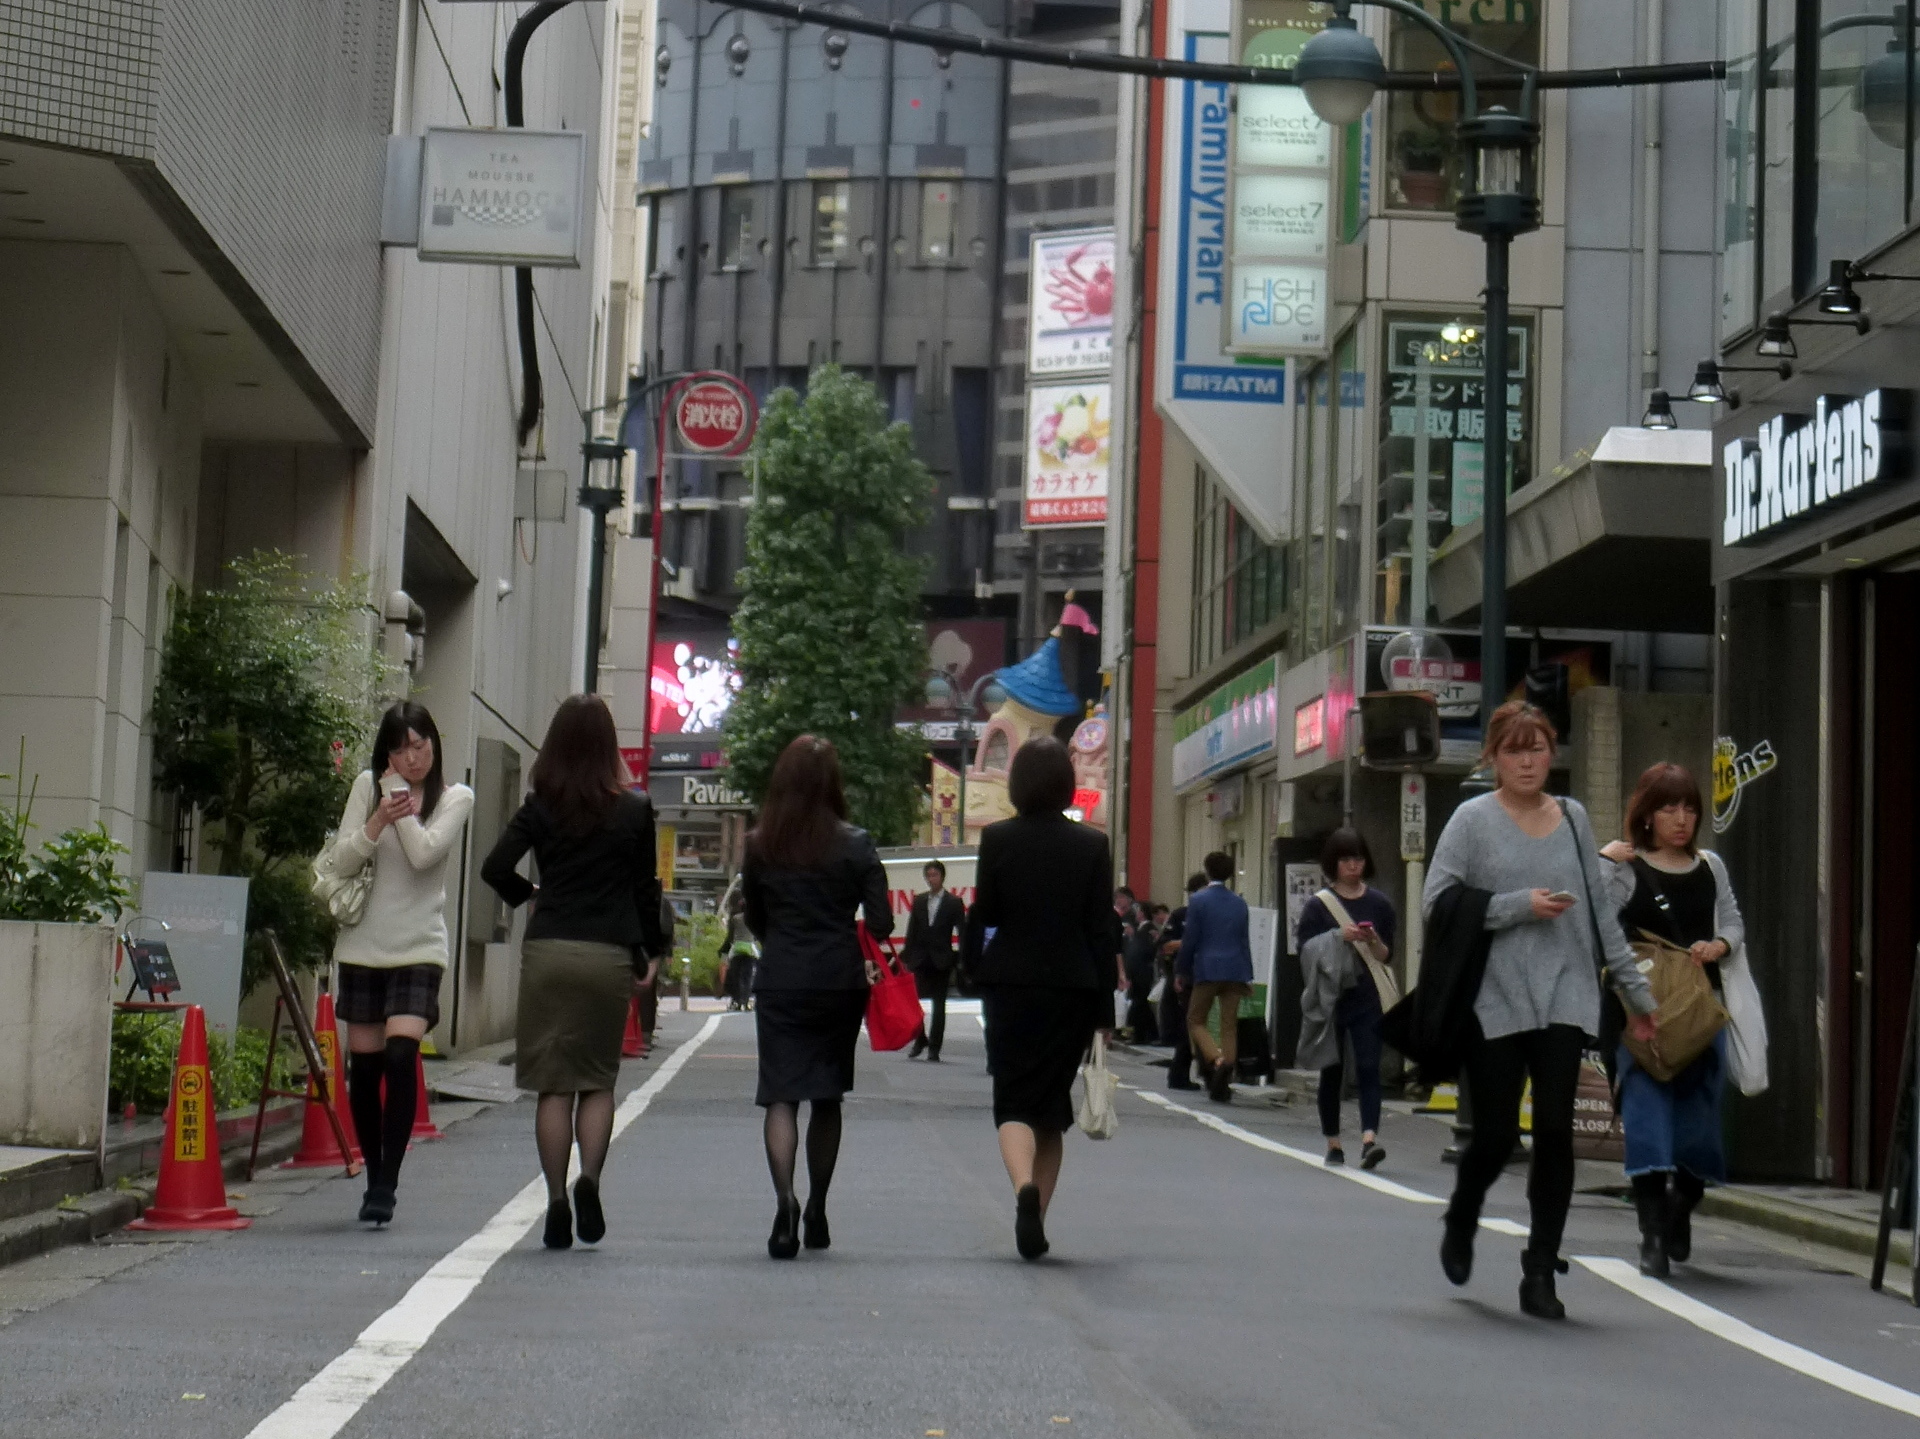 ประธานบริษัทหญิงในญี่ปุ่นเพิ่มขึ้นทำสถิติใหม่ แต่ยังน้อยกว่า 10%